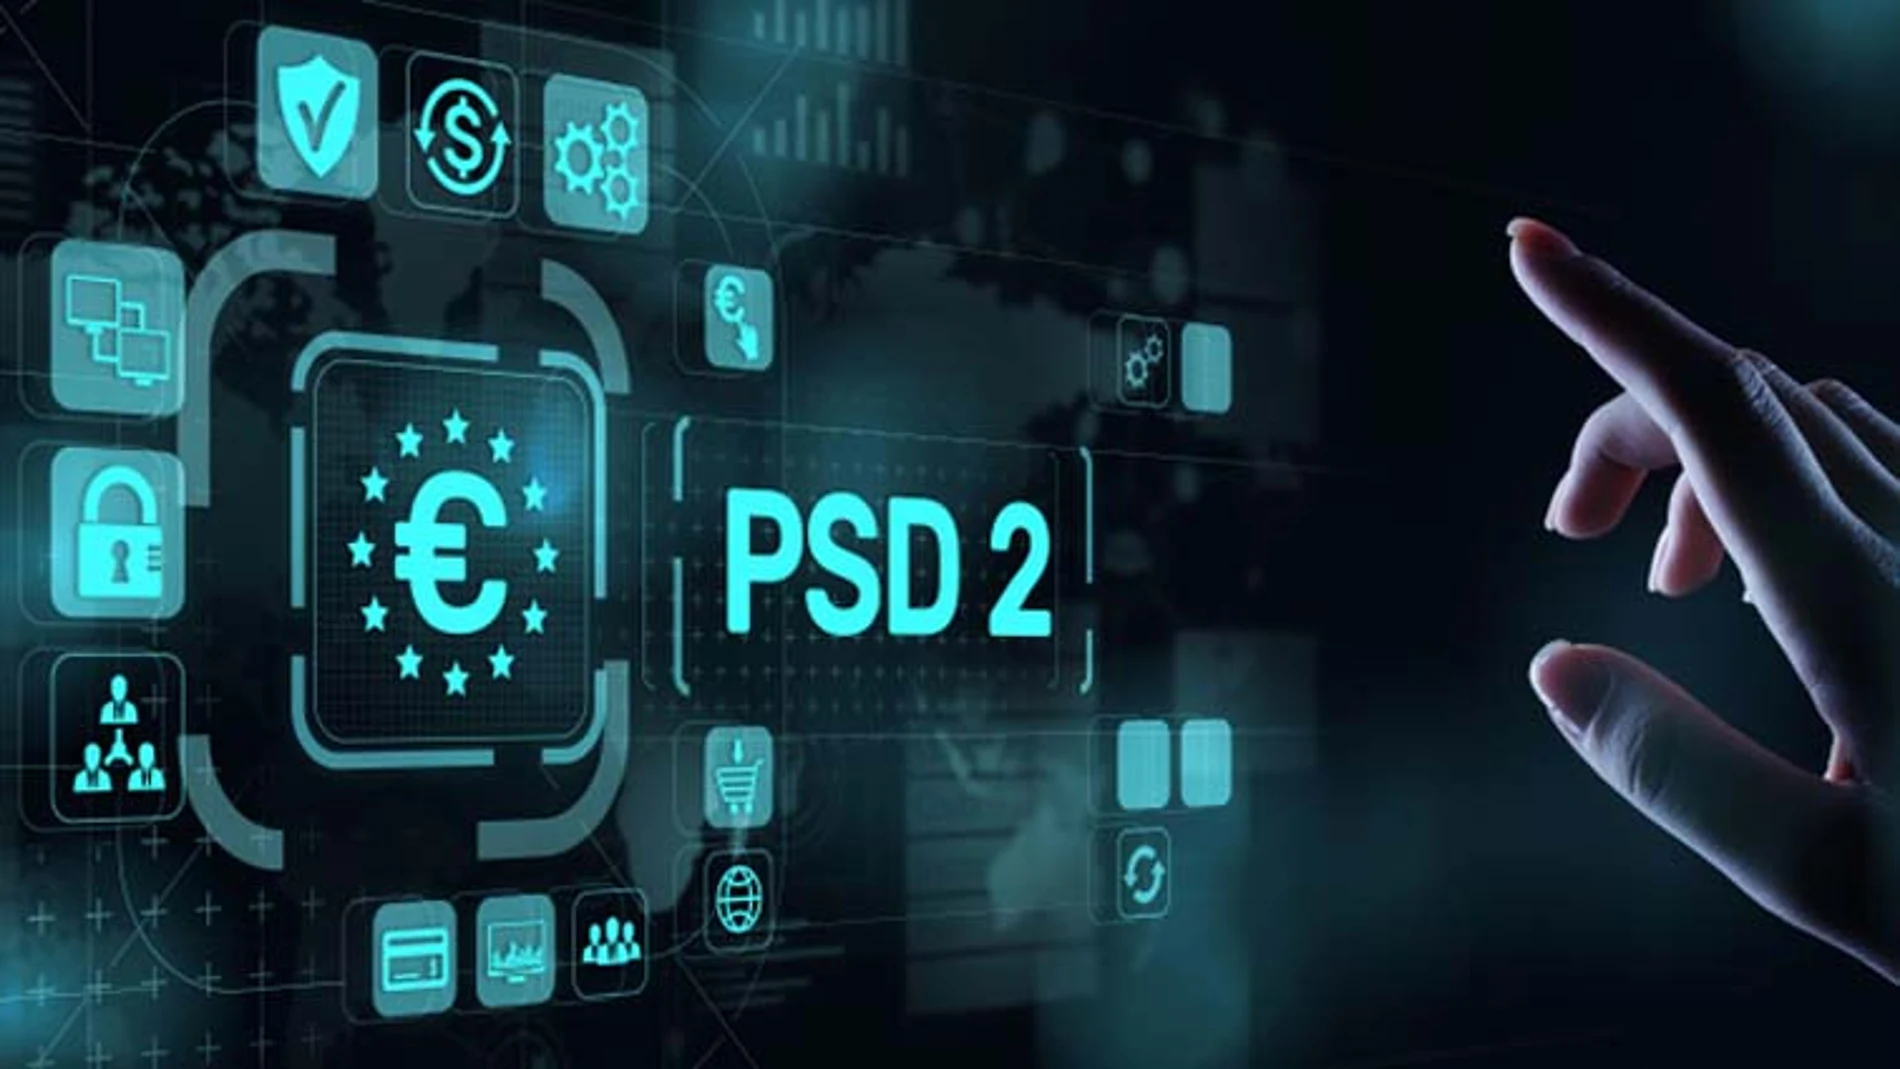 El estándar 3D Secure 2.0 bajo la normativa europea PSD2 implica una doble característica de seguridad en las transacciones online desde el 14 de septiembre.